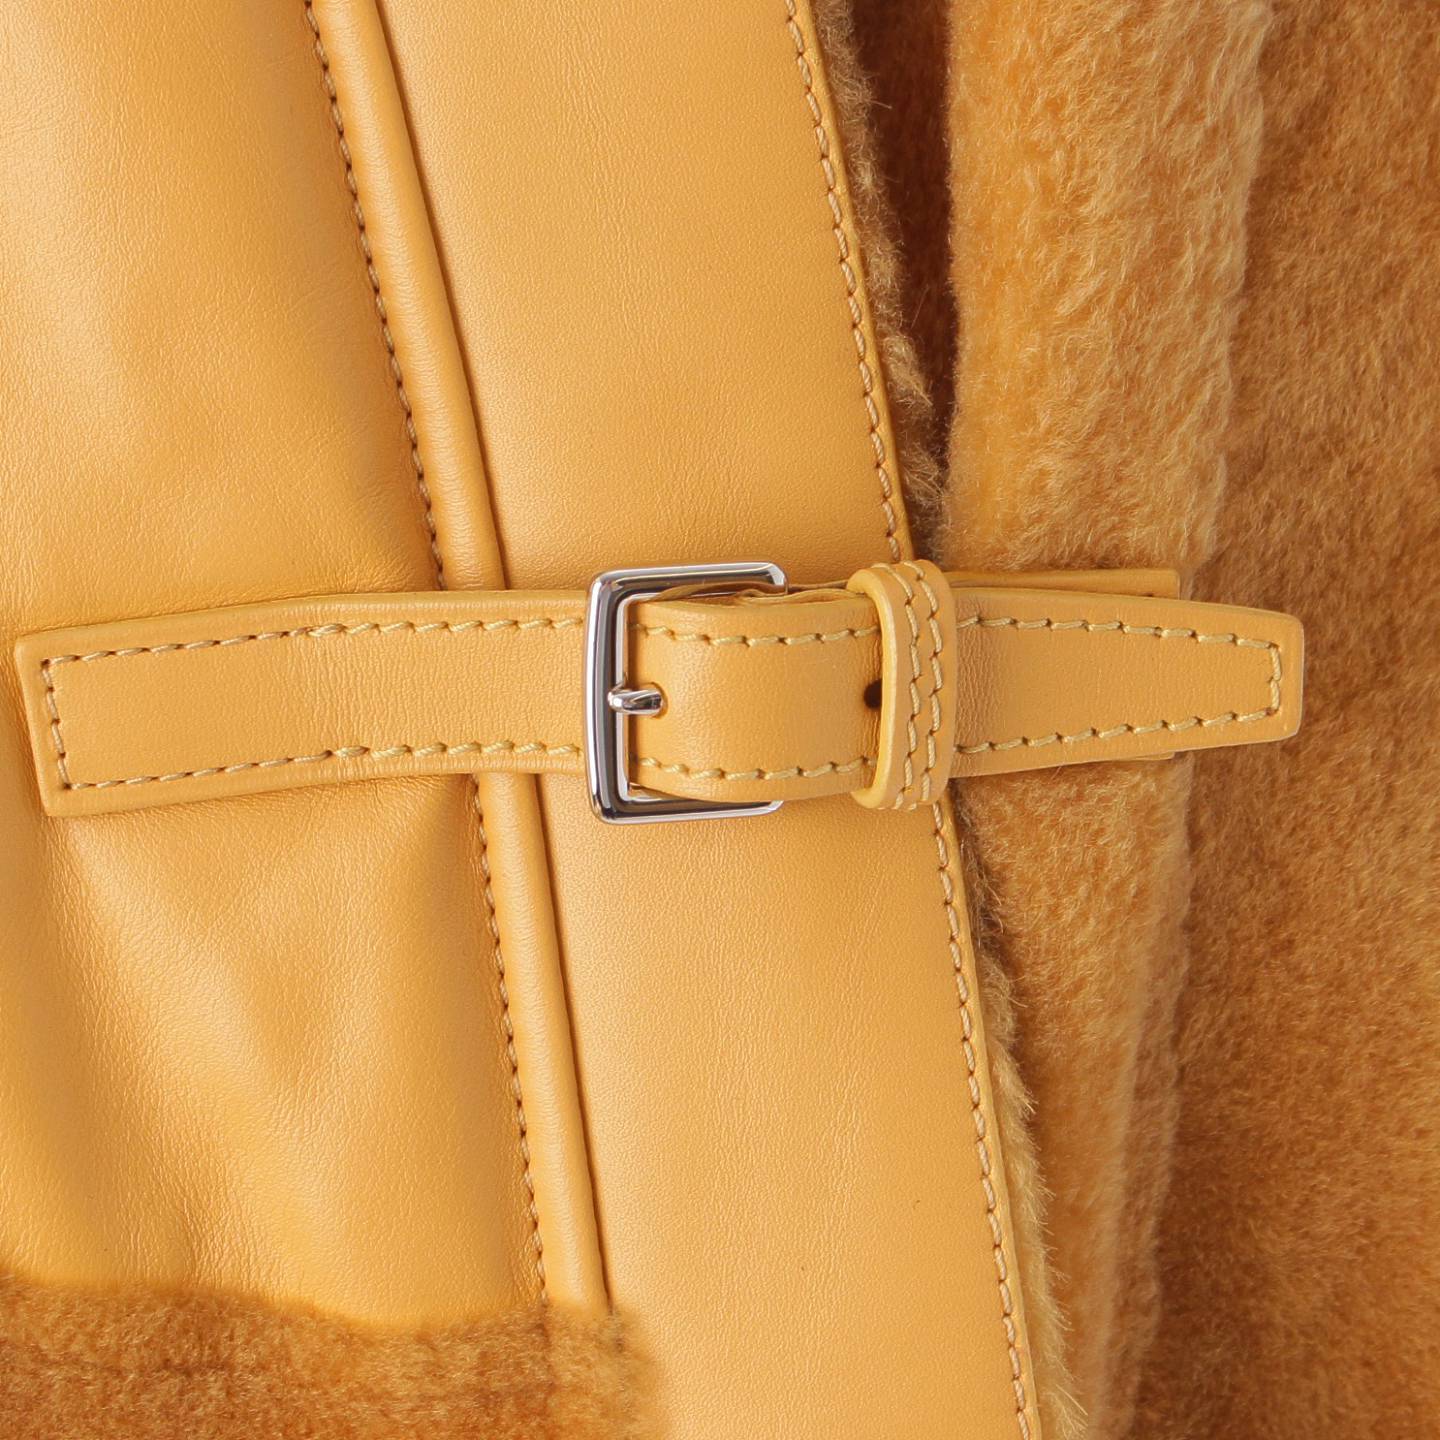 [ Hermes ]Hermes 17 год мутон × кожаный ремень длинное пальто Camel 36 [ б/у ][ стандартный товар гарантия ]202571